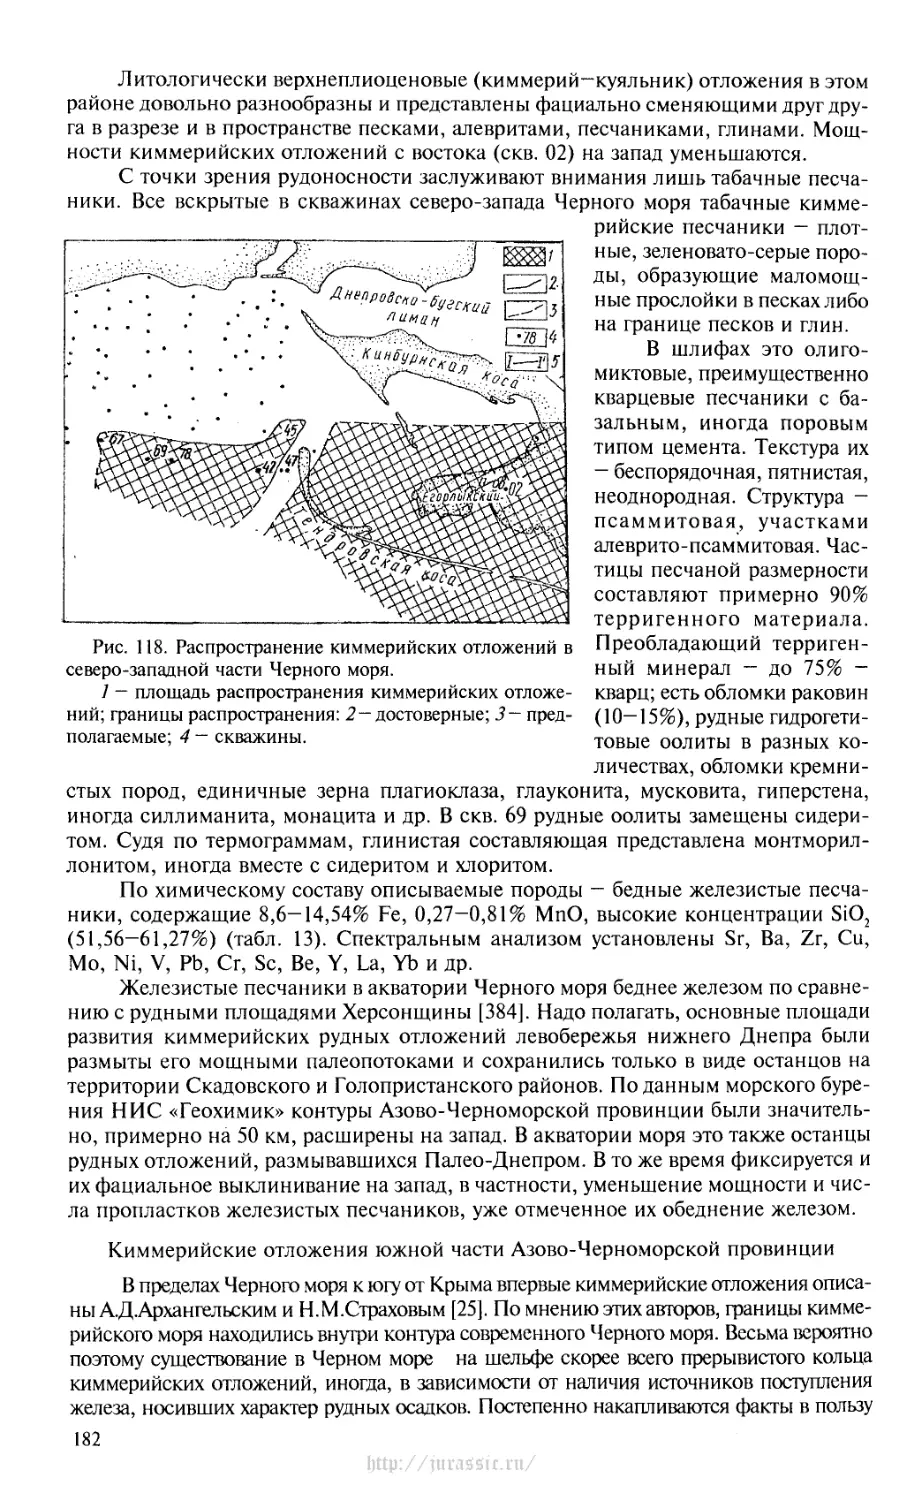 Киммерийские отложения южной части Азово-Черноморской провинции